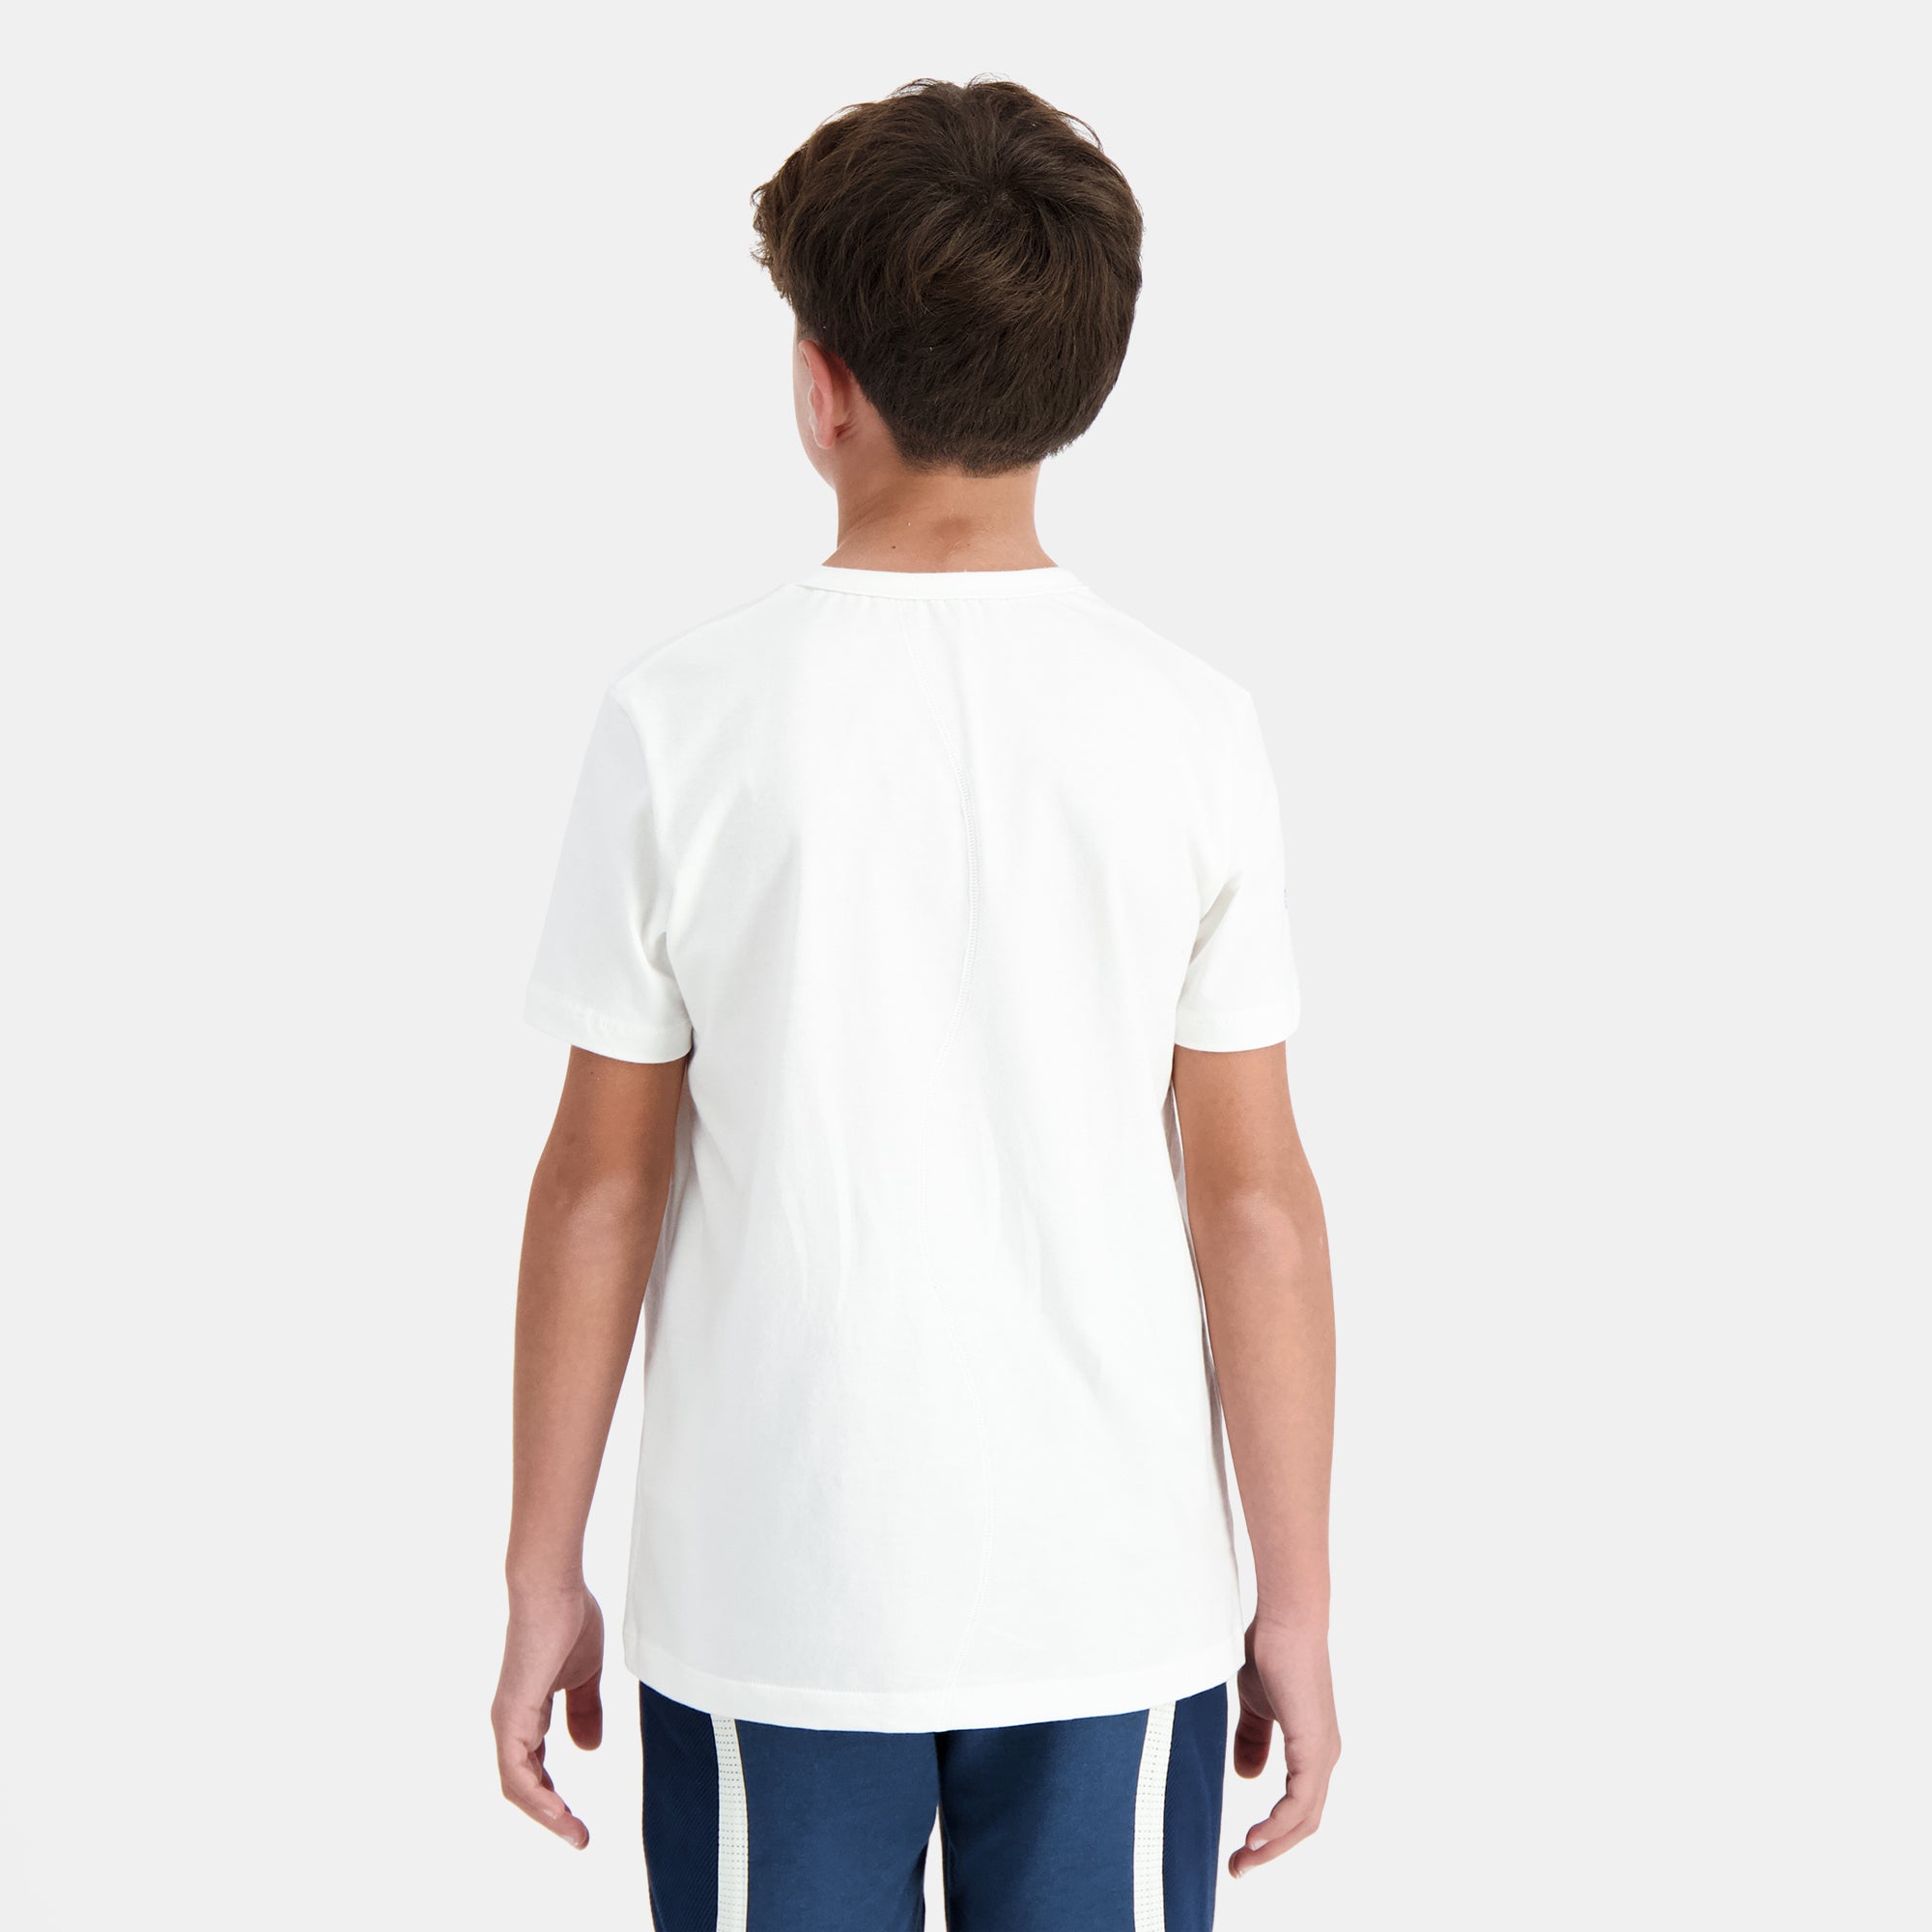 2410087-EFRO 24 Tee SS N°1 Enfant marshmallow  | Camiseta Niño